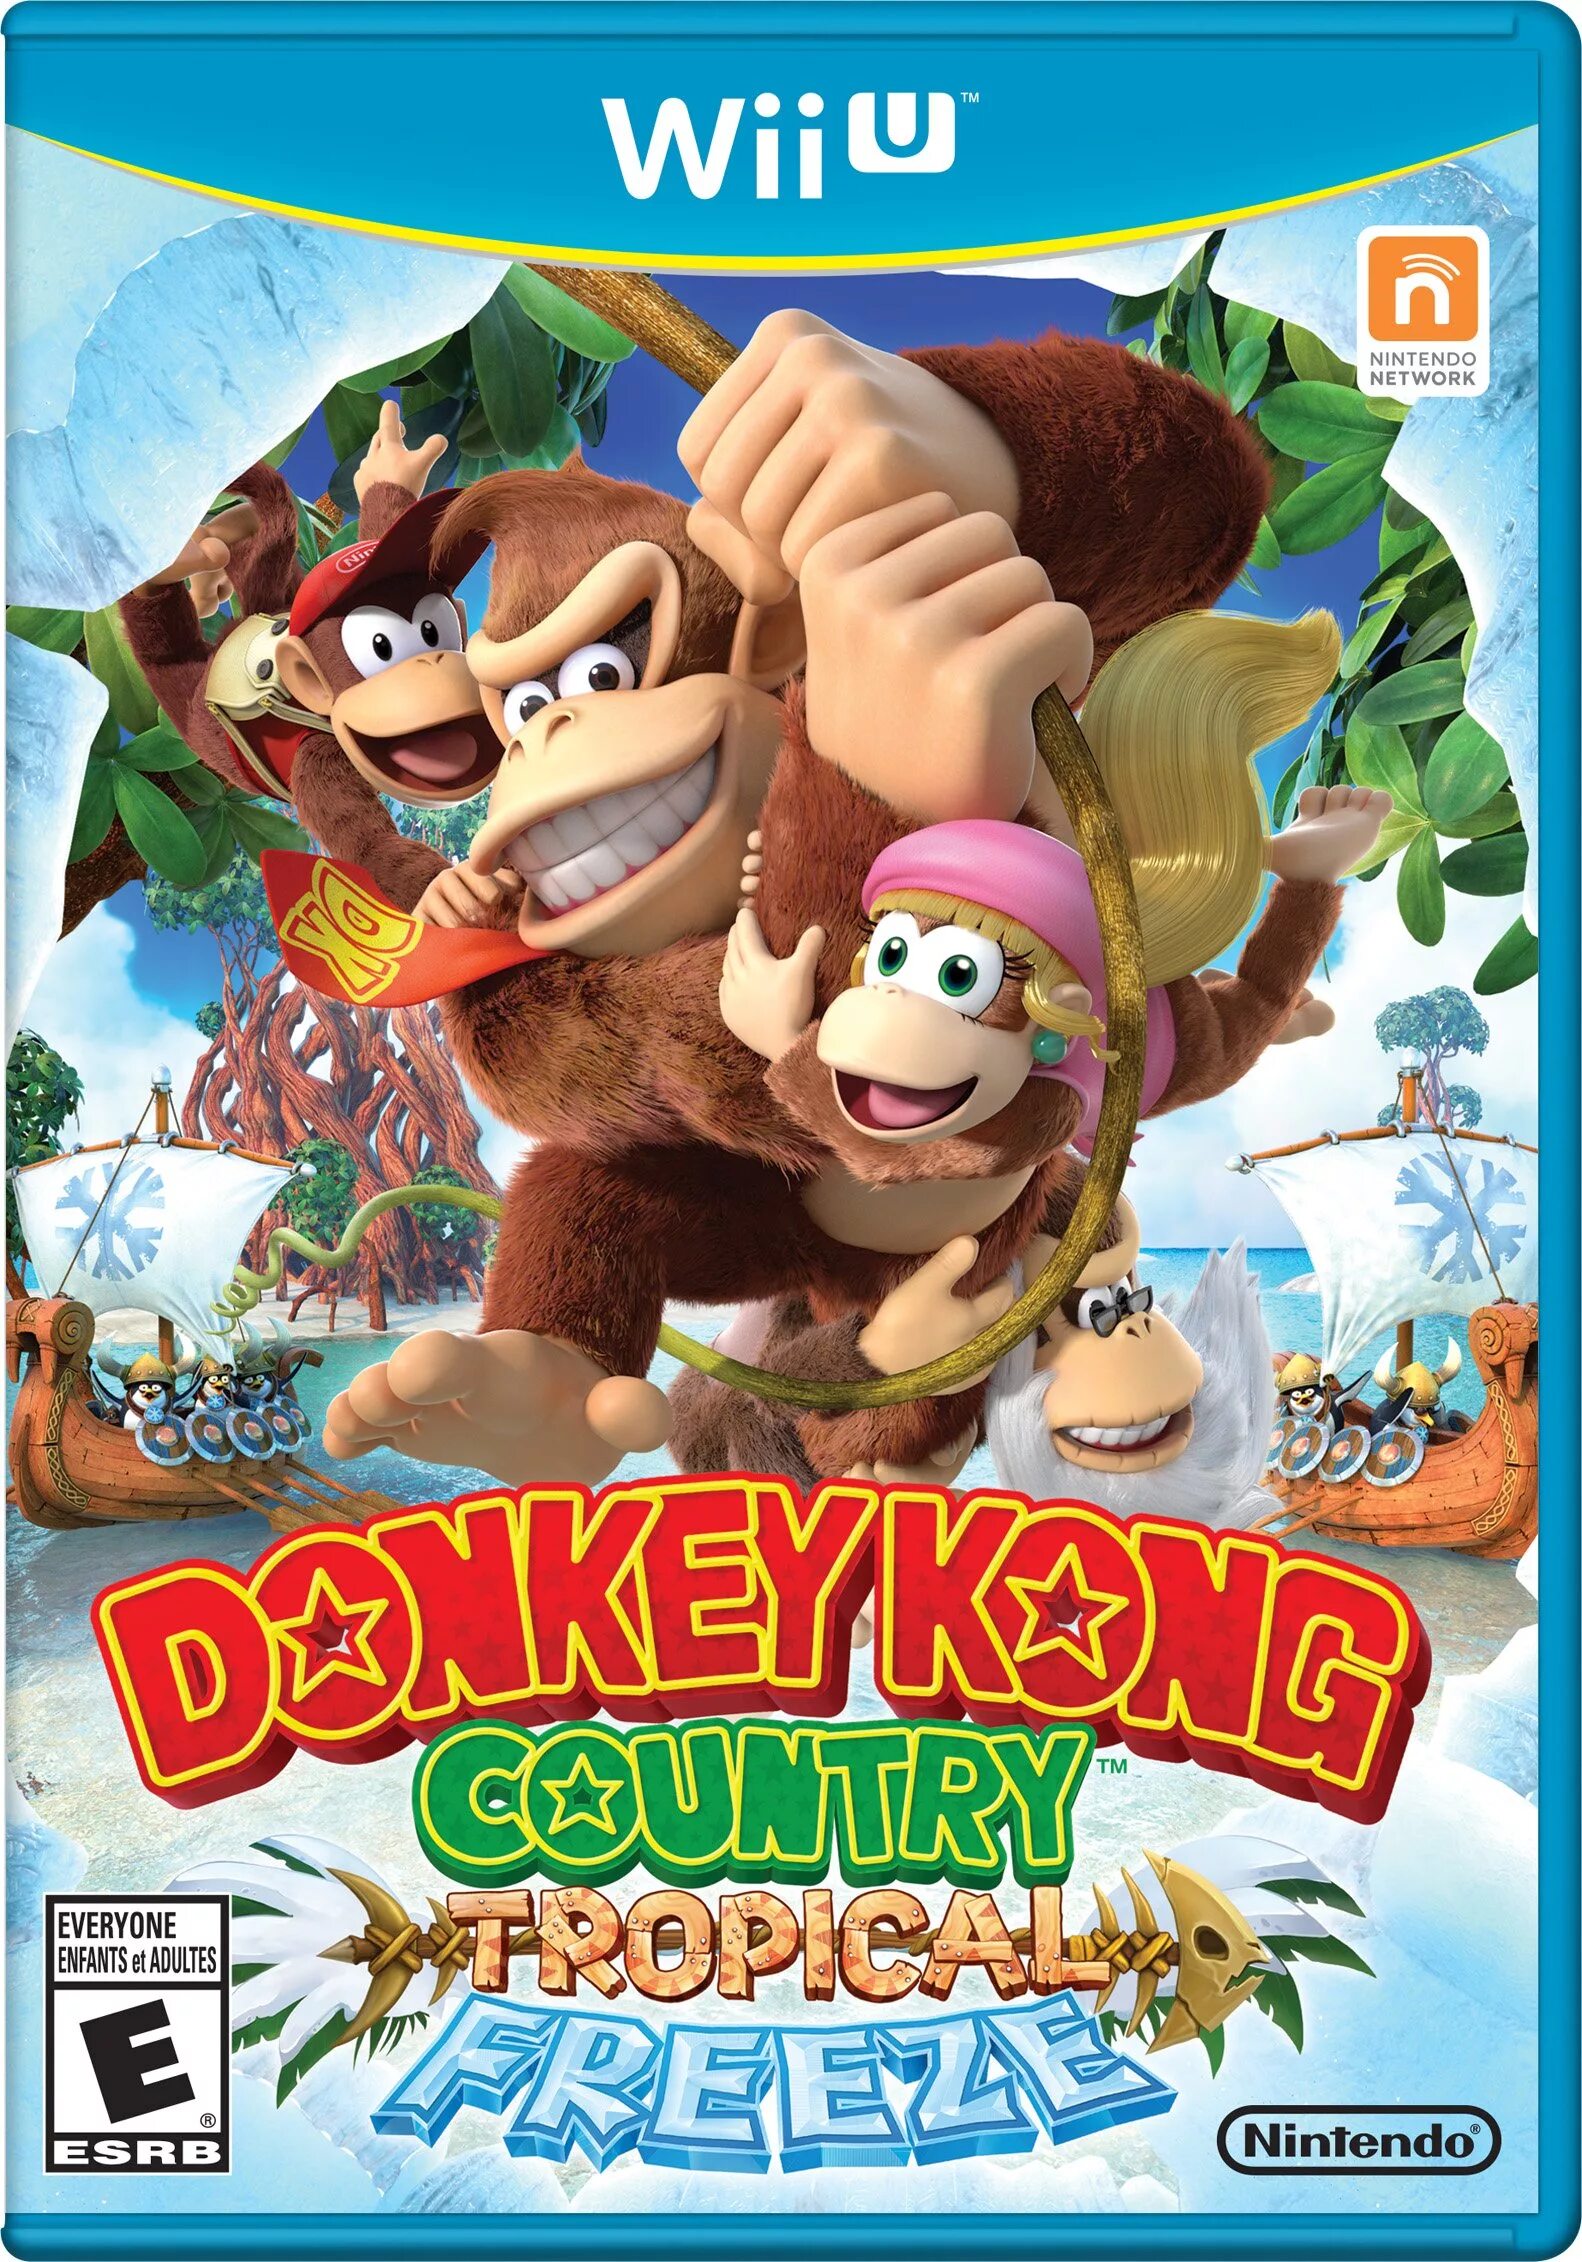 Donkey kong country freeze. Donkey Kong Country Tropical Freeze Nintendo Wii u. Donkey Kong Country Tropical Freeze обложка. Donkey Kong Country Returns Wii. Donkey Kong Country Tropical Freeze Nintendo Switch.